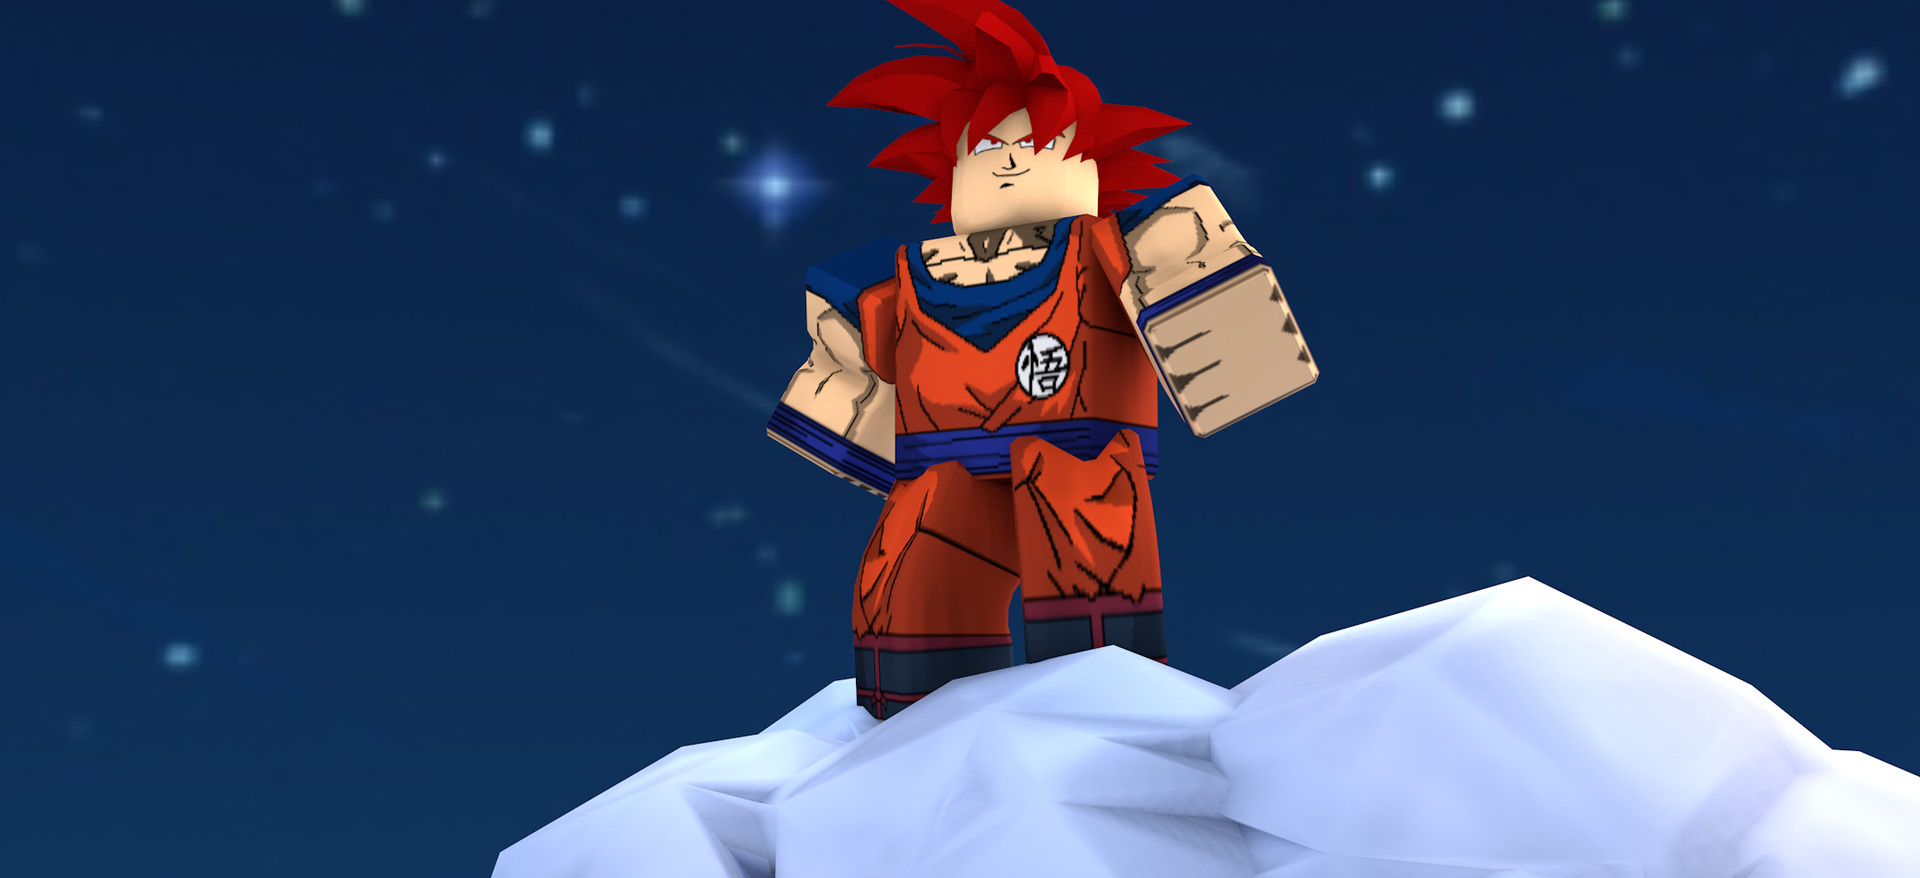 Tony ROBLOX - Goku